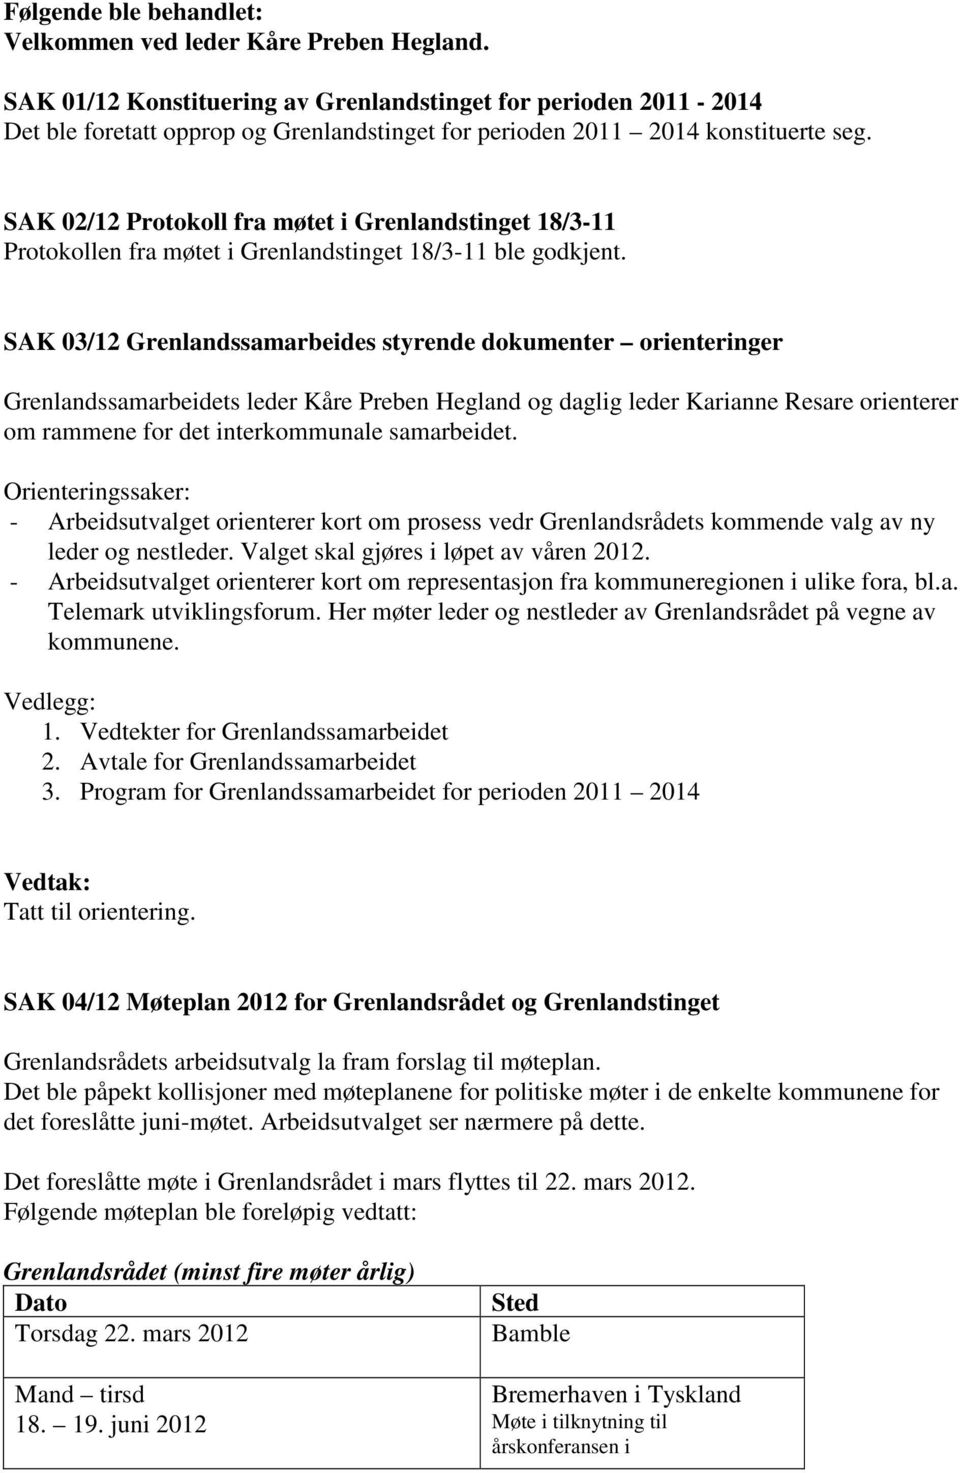 SAK 02/12 Protokoll fra møtet i Grenlandstinget 18/3-11 Protokollen fra møtet i Grenlandstinget 18/3-11 ble godkjent.